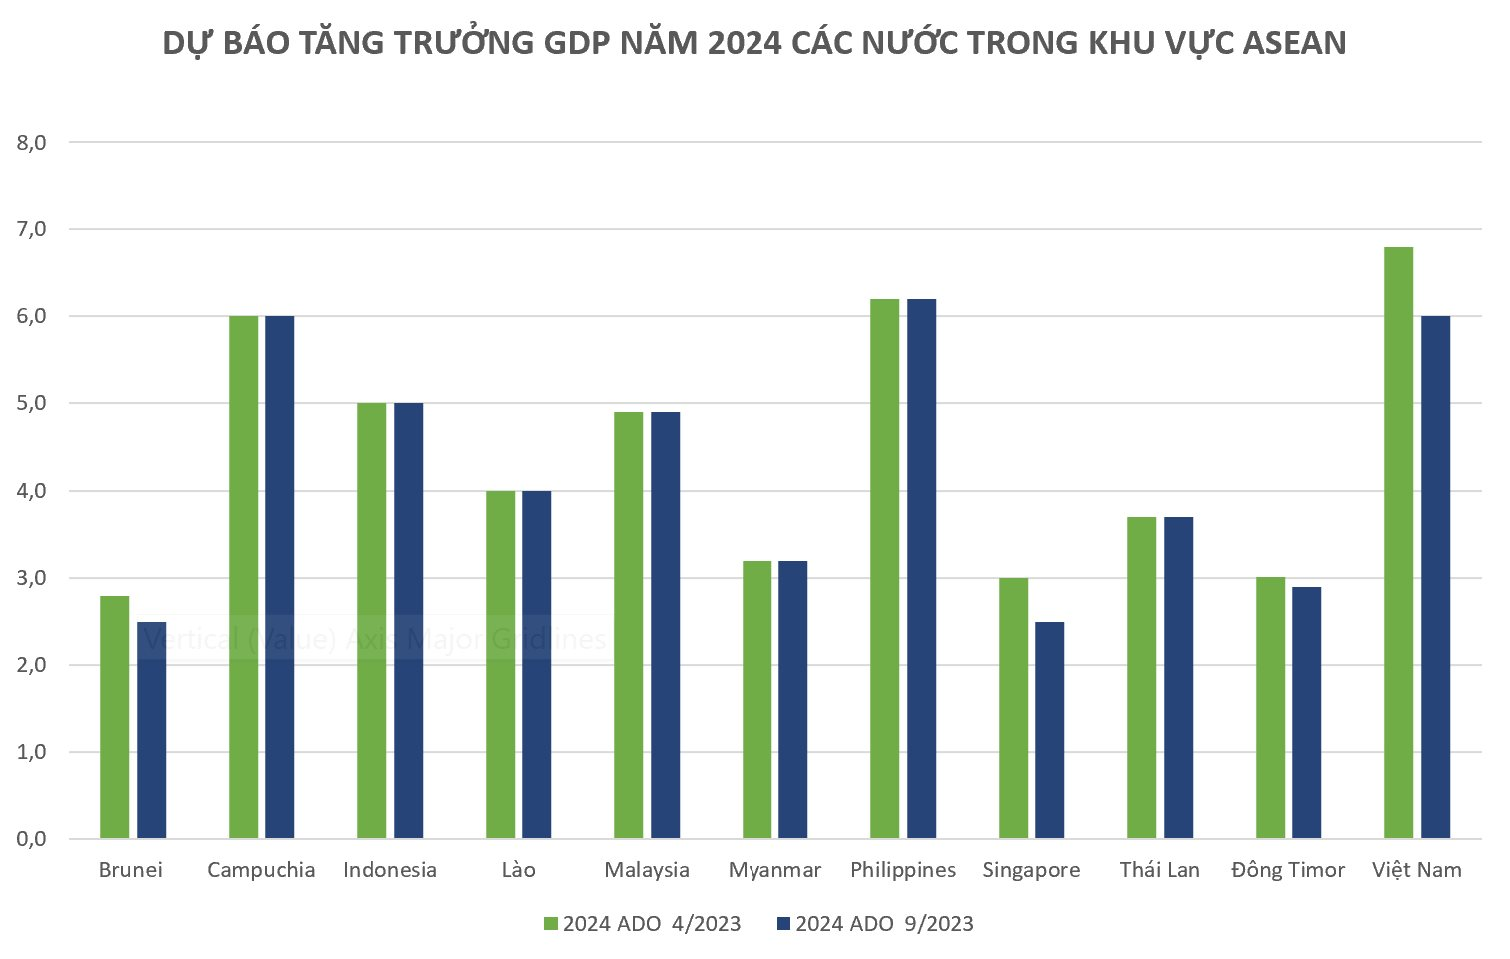 Tăng trưởng kinh tế 2023 của Việt Nam được dự báo cao hay thấp so với Thái Lan, Singapore và các nước láng giềng? - Ảnh 3.